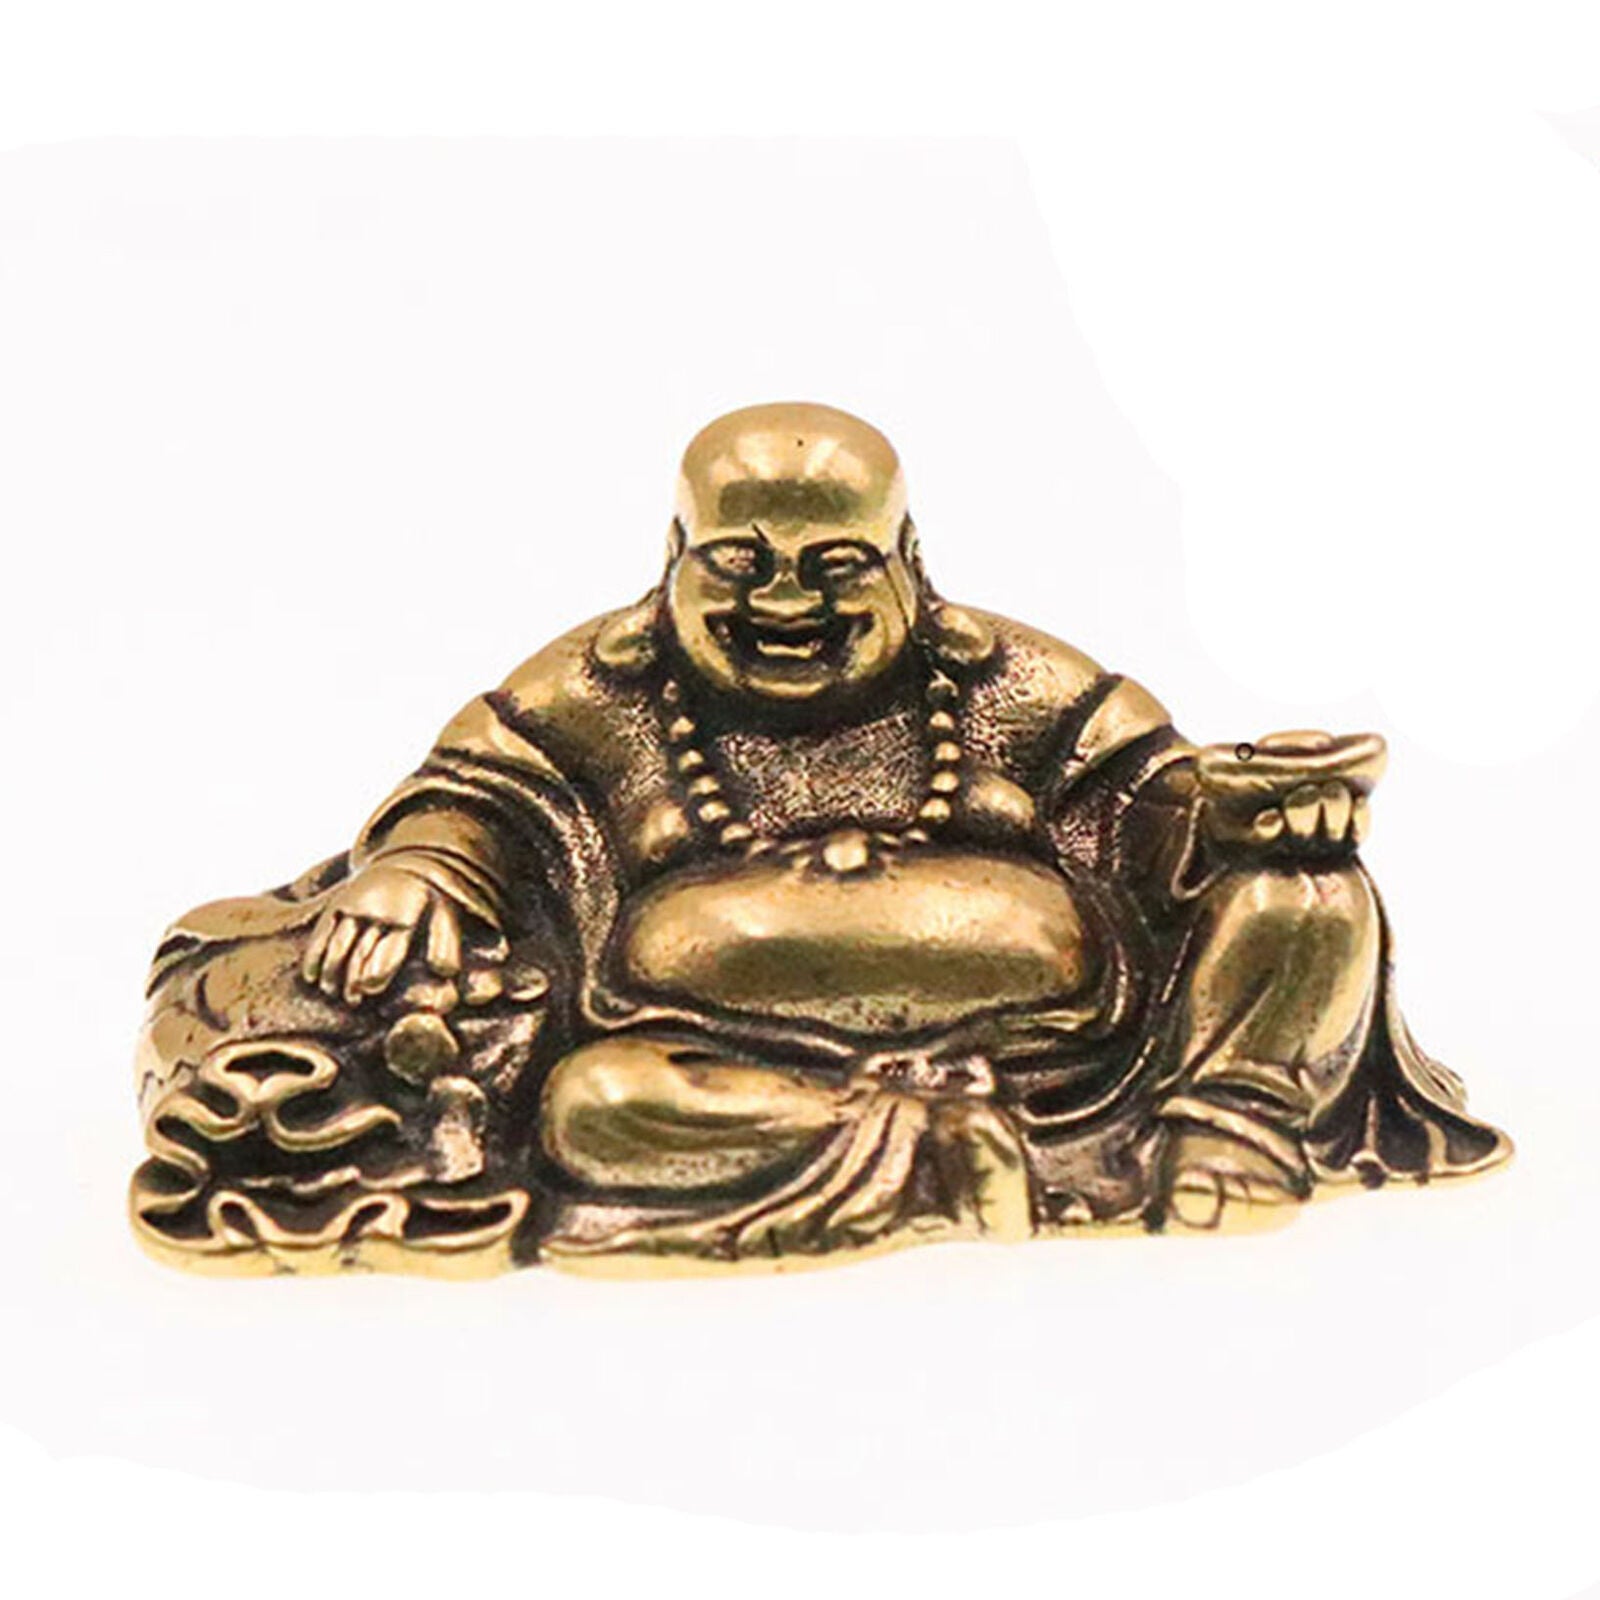 Small Chinese Brass Religion Buddhism Maitreya Buddha Statue Decoration Ornament